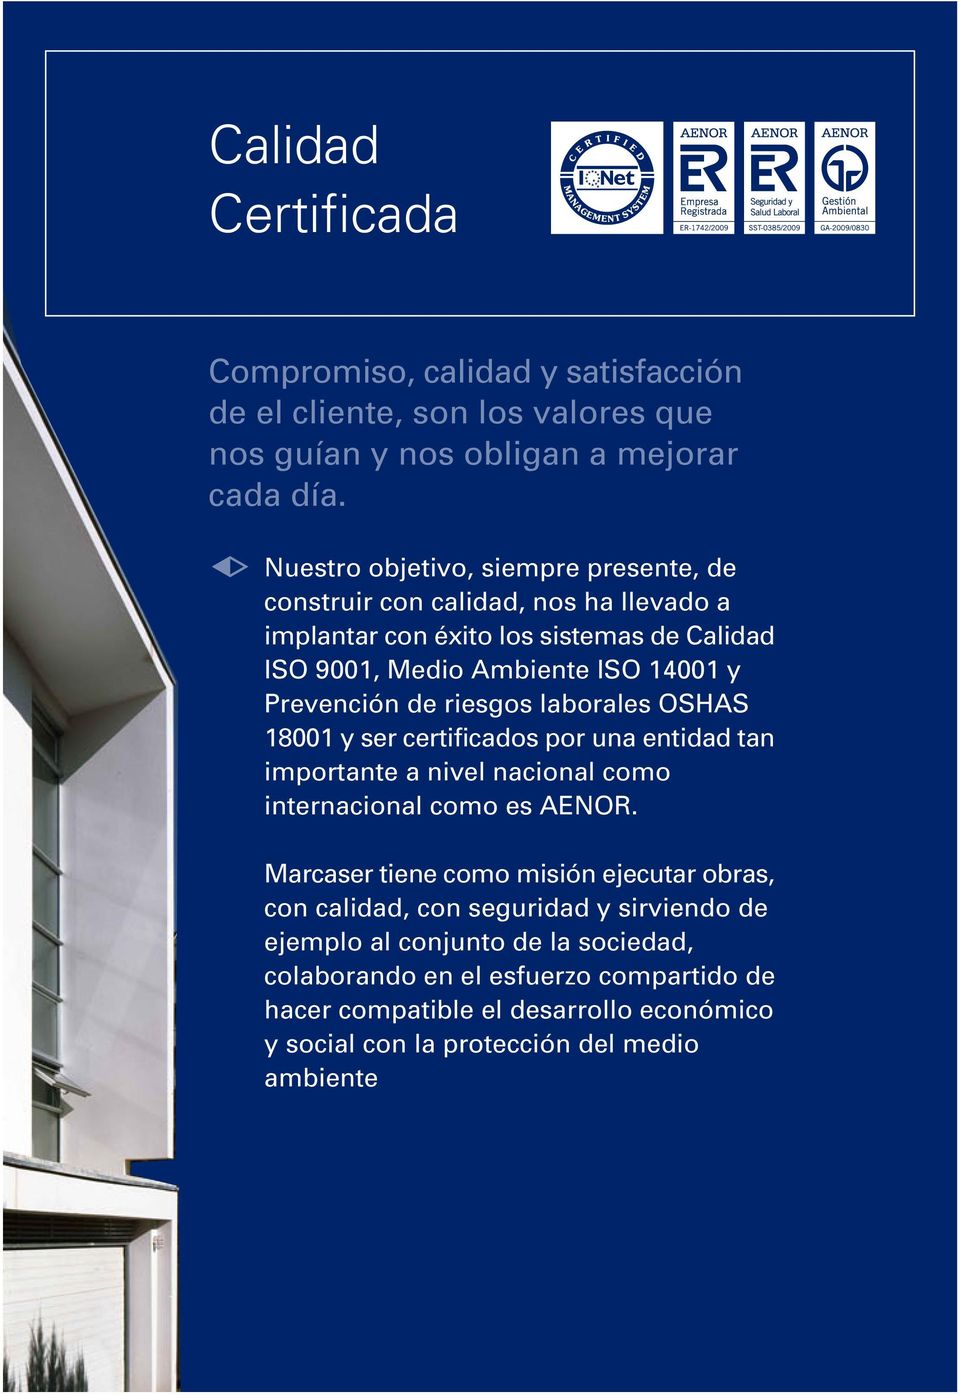 de riesgos laborales OSHAS 18001 y ser certificados por una entidad tan importante a nivel nacional como internacional como es AENOR.